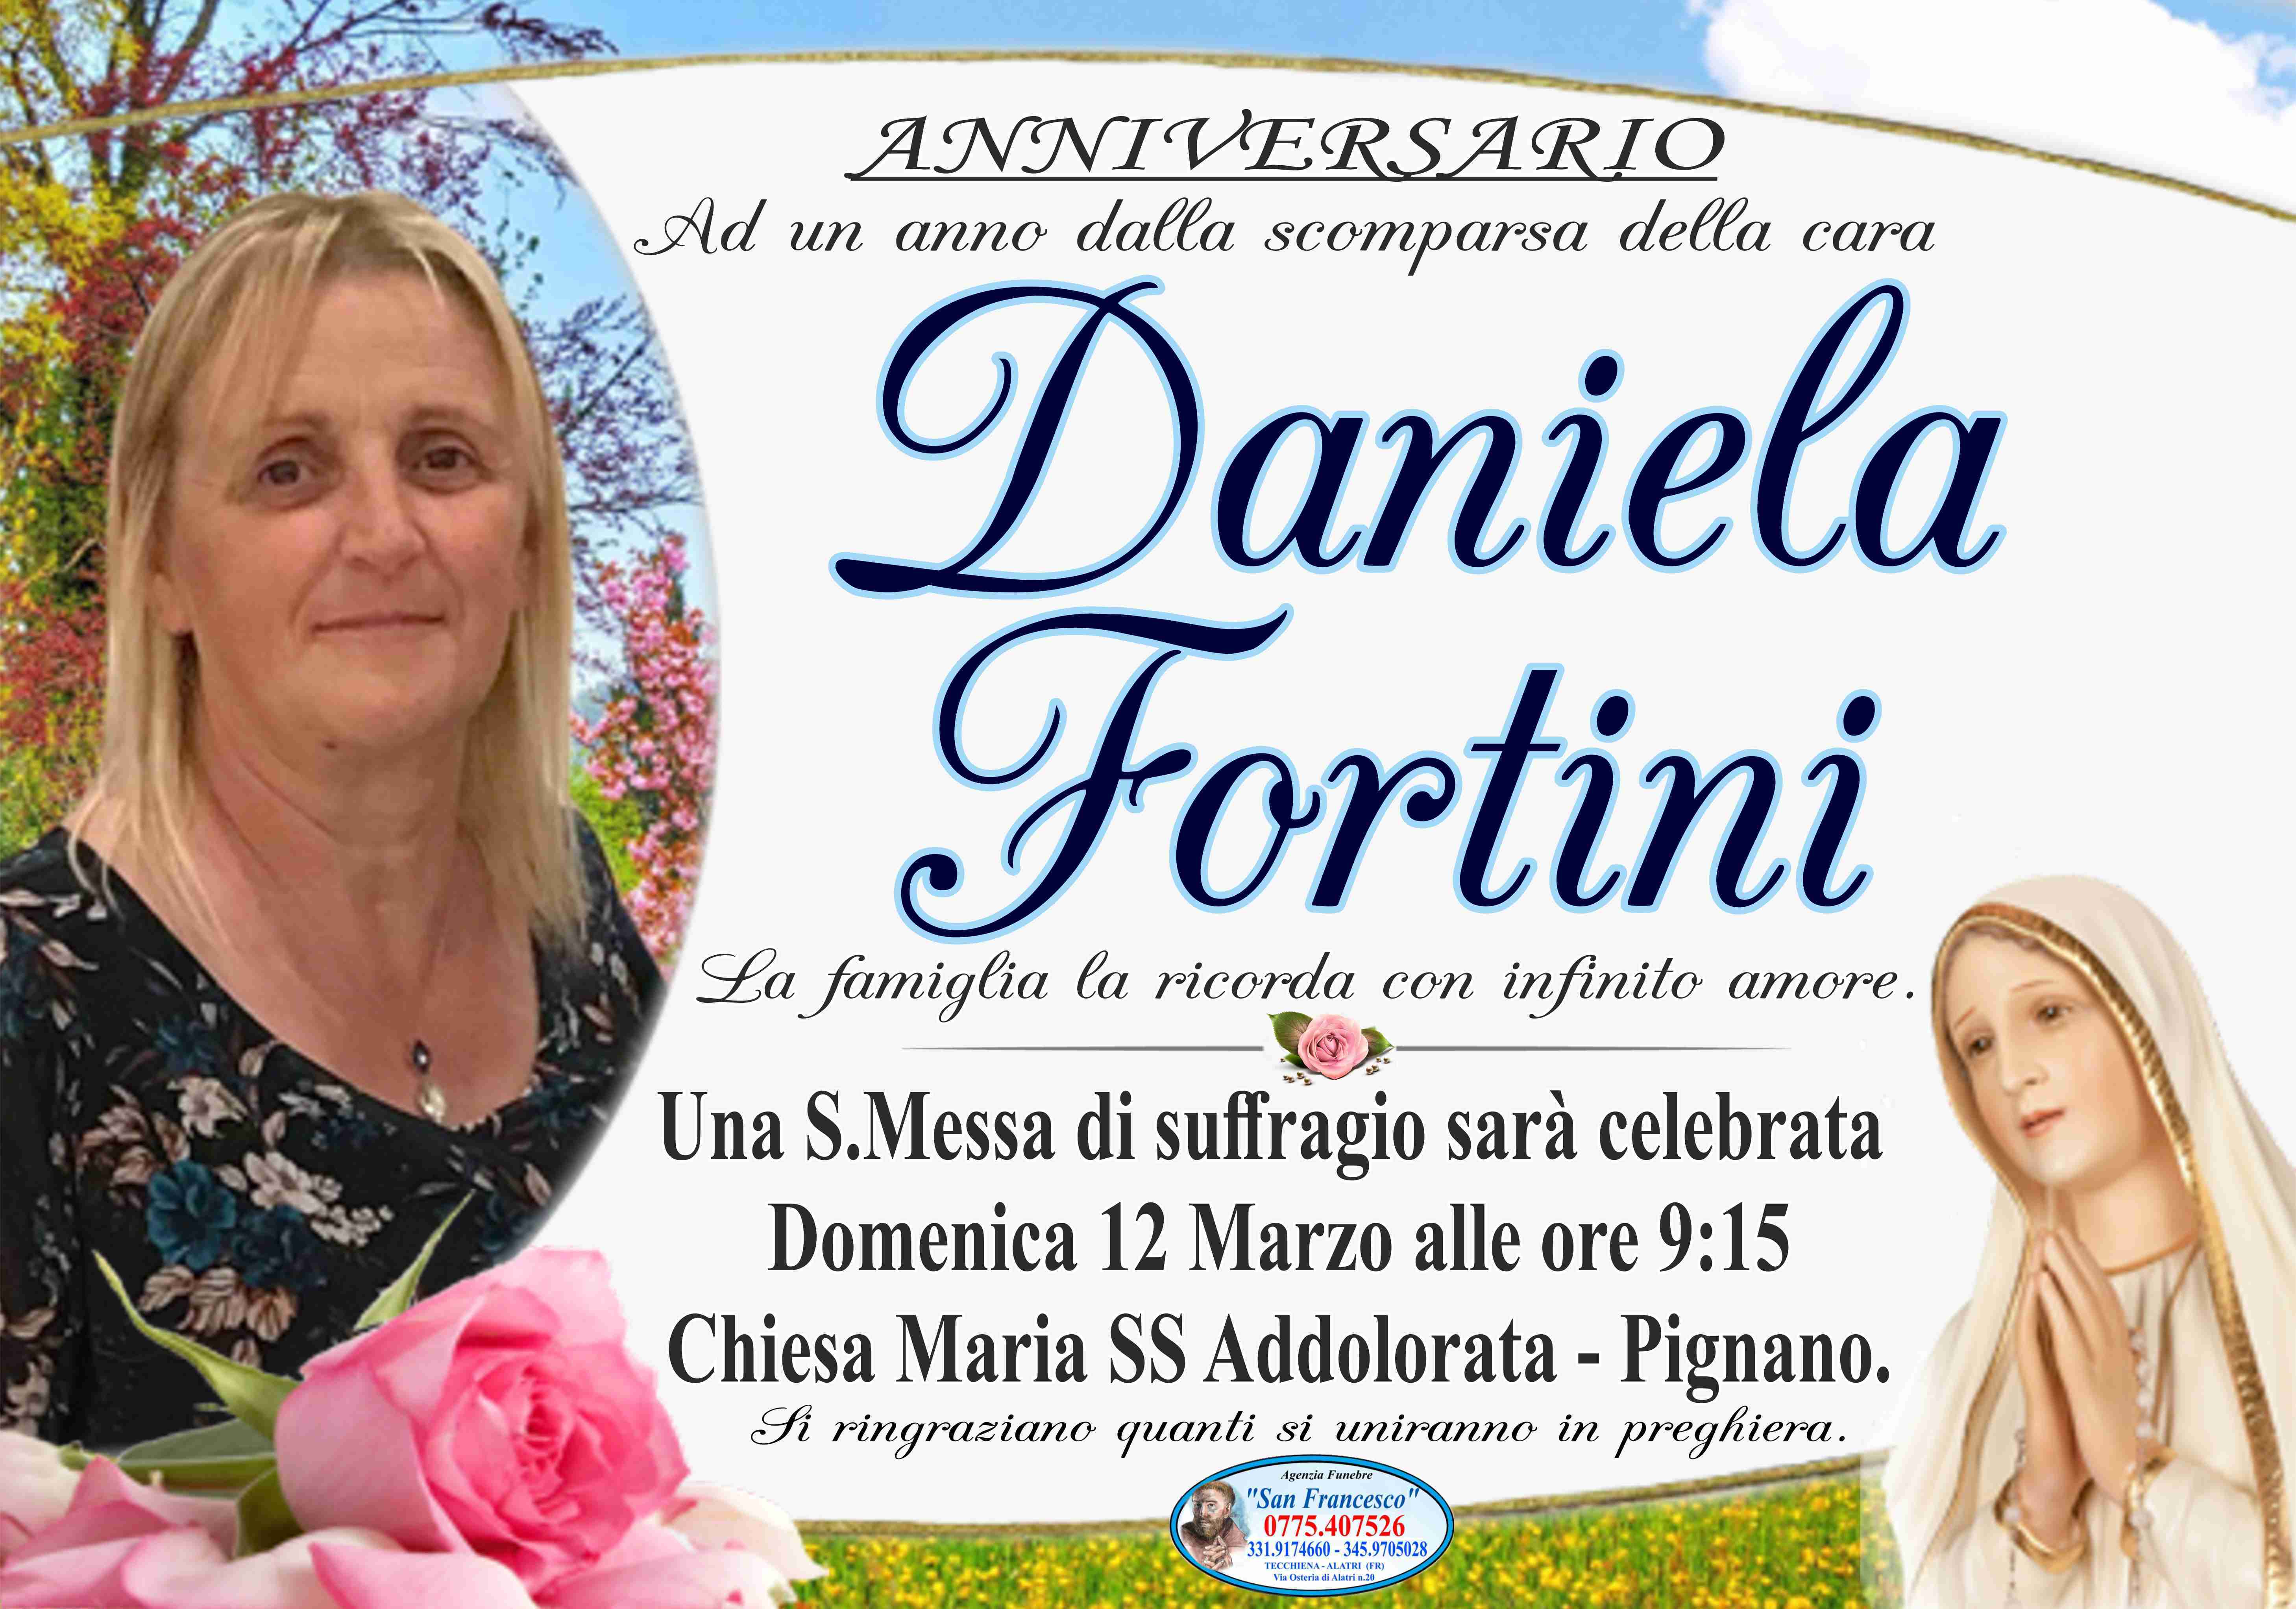 Daniela Fortini